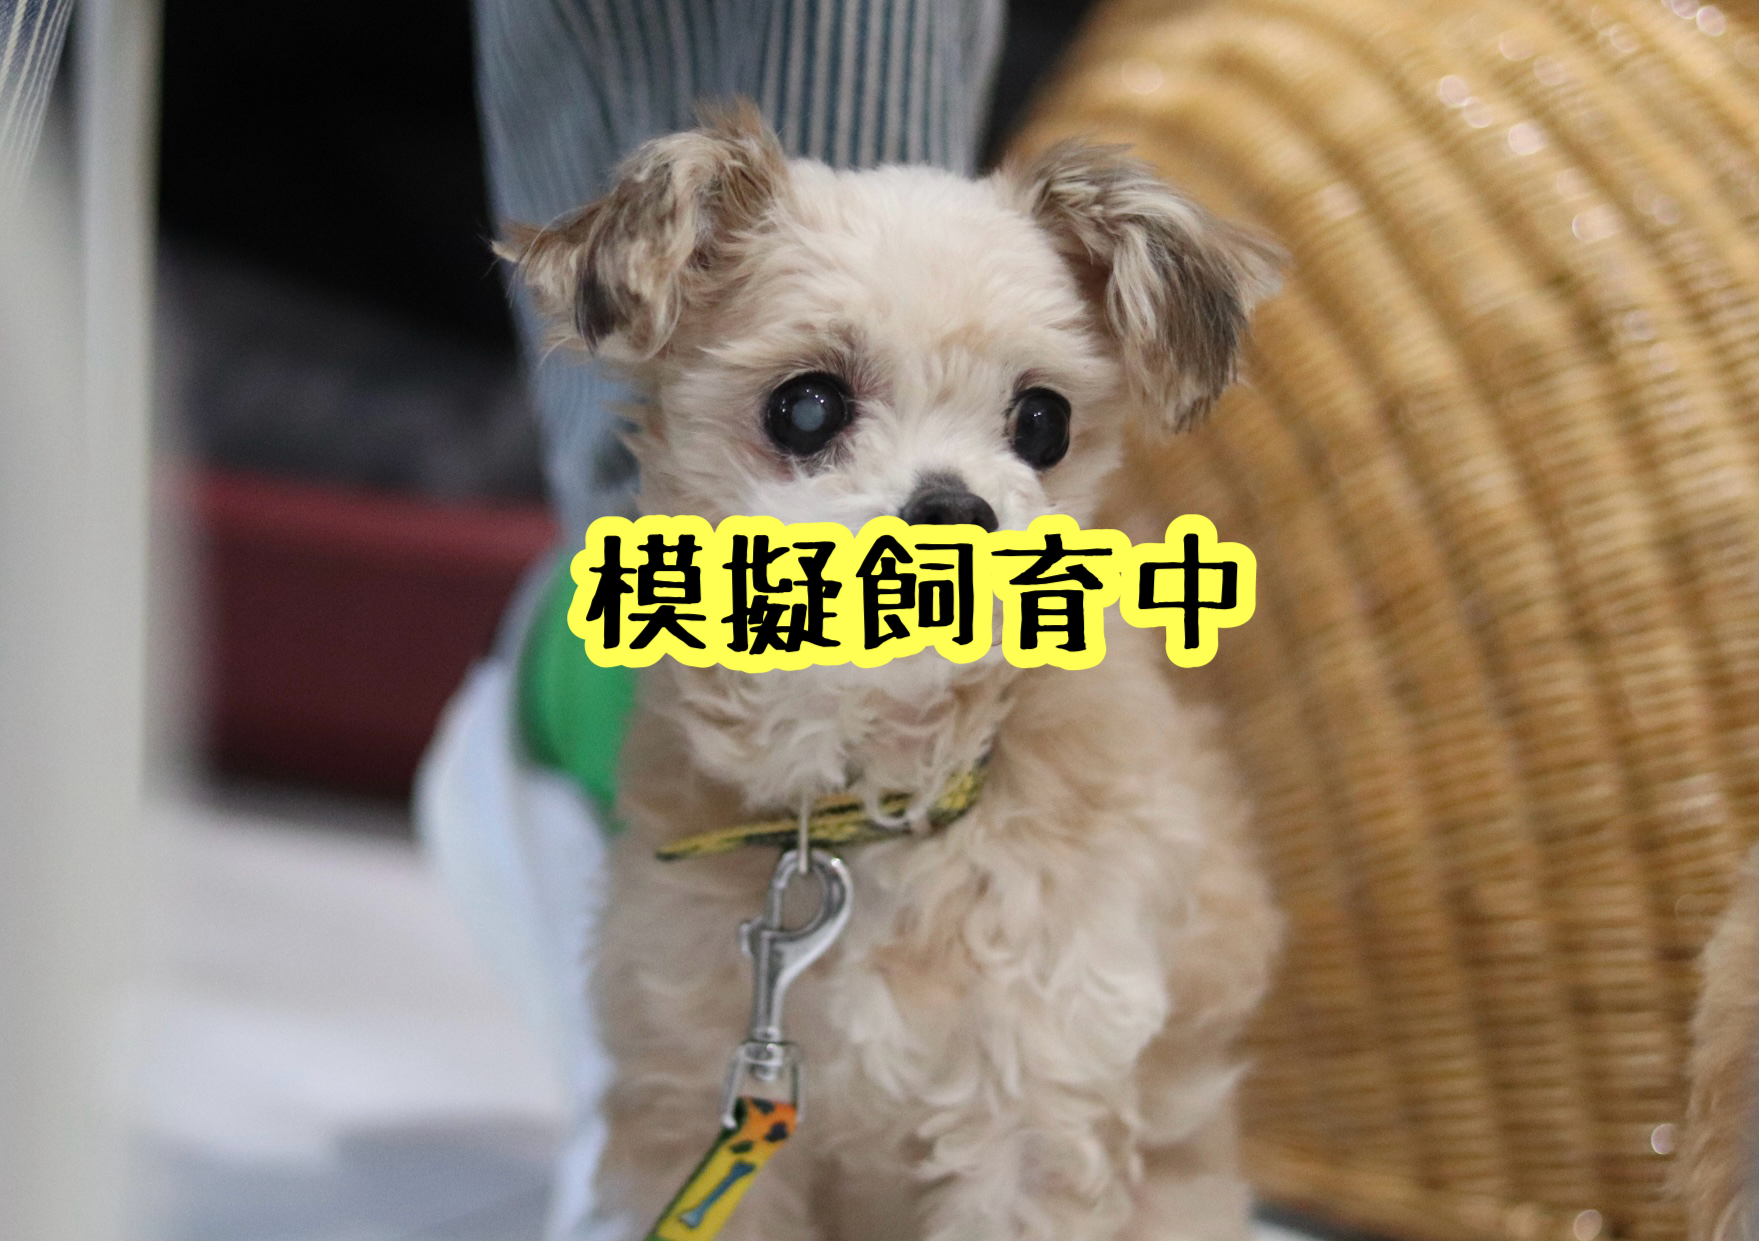 <ul>
<li>犬種：トイプードル×チワワMIX</li>
<li>名前（性別）：モコ（女の子）</li>
<li>年齢：2012年8月28日生まれ</li>
<li>保護経緯：家族の犬アレルギーのため飼育困難</li>
</ul>
